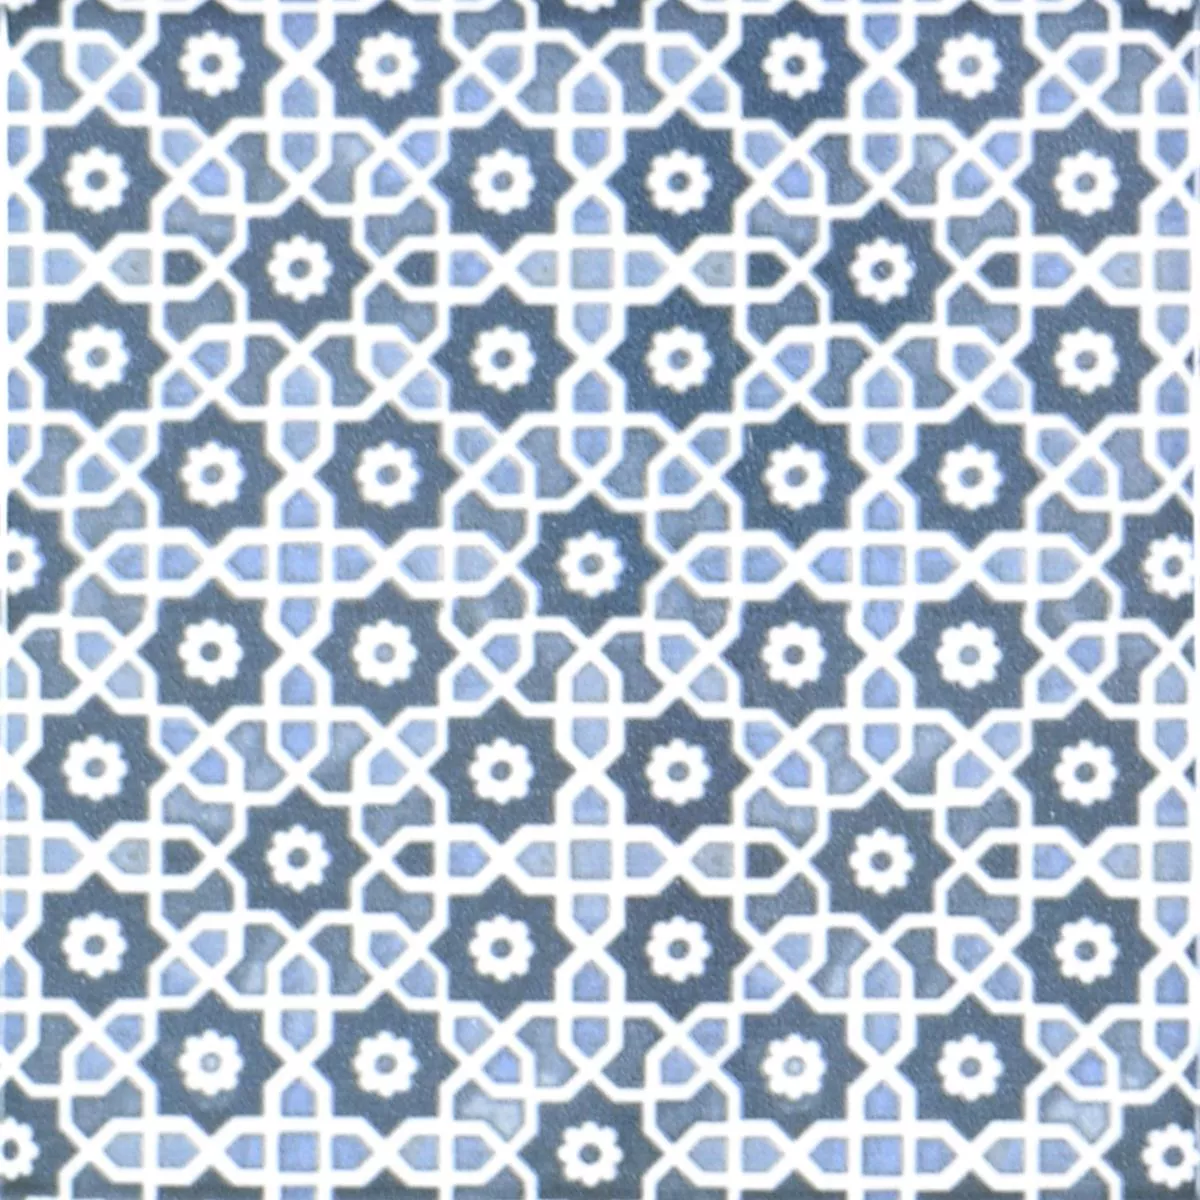 Próbka Ceramika Mozaika Daymion Retro Optyka Niebieski 